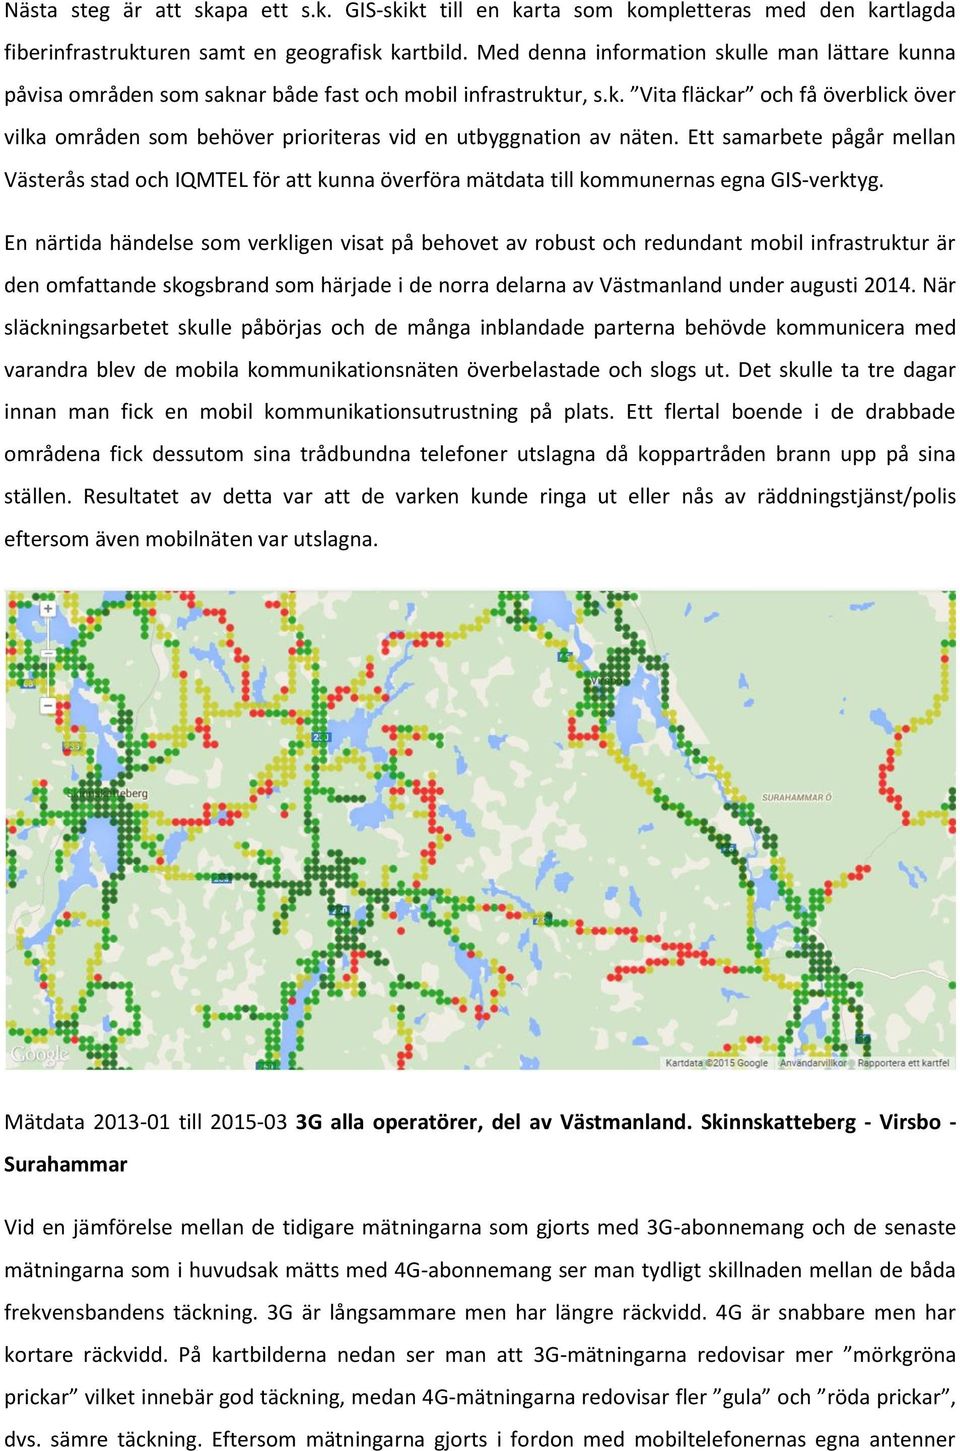 Ett samarbete pågår mellan Västerås stad och IQMTEL för att kunna överföra mätdata till kommunernas egna GIS-verktyg.